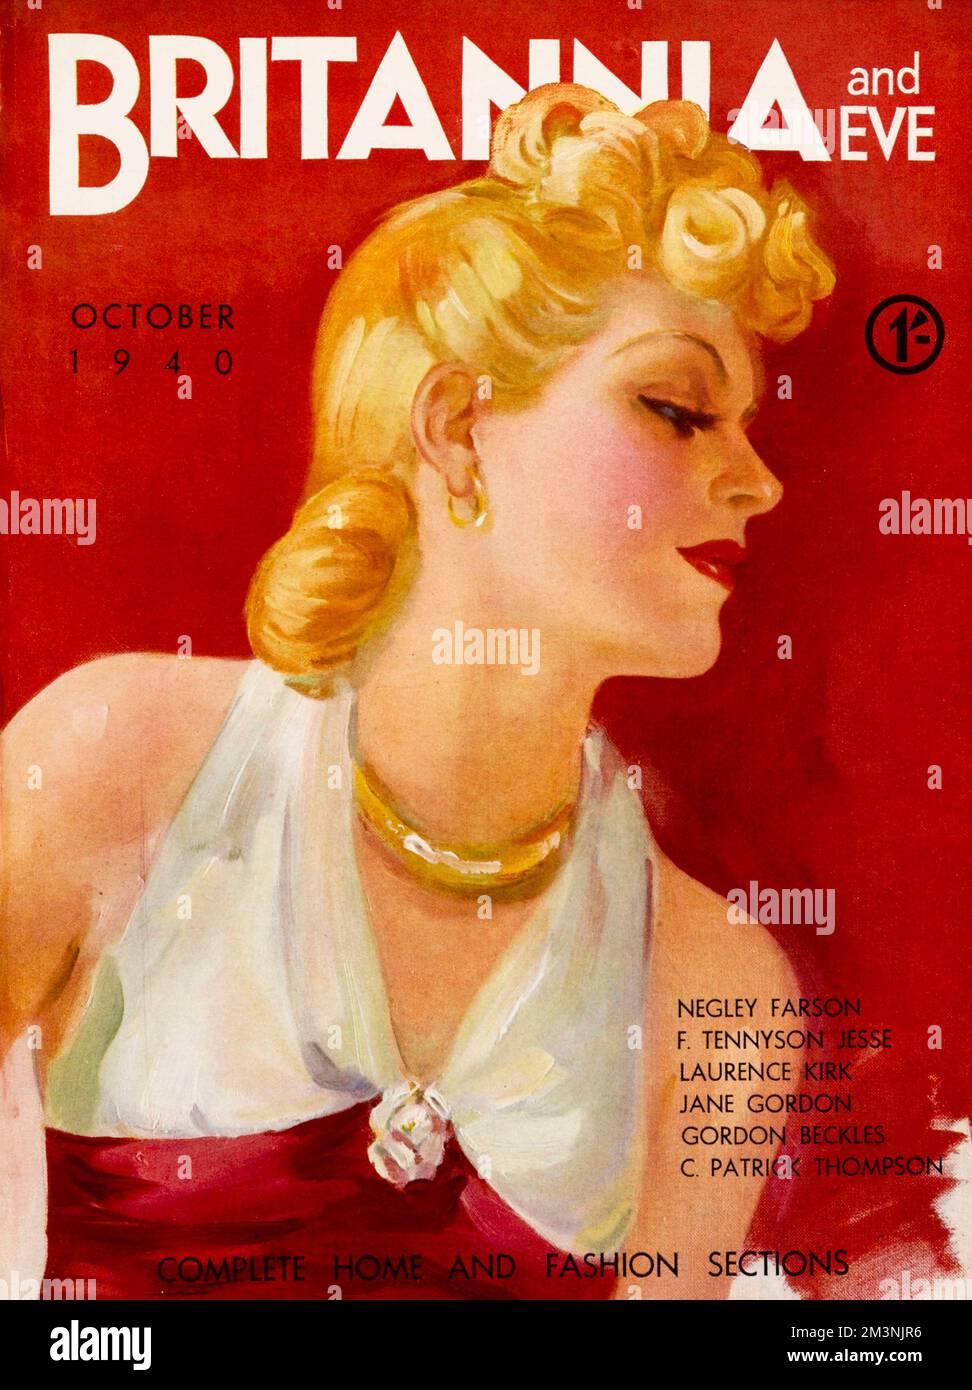 Abbildung auf der Vorderseite mit einer blonden Schönheit aus dem Jahr 1940er, mit einem rot-weißen Oberteil mit Halsausschnitt, goldenen Ohrringen und einer Halskette. Datum: 1940 Stockfoto